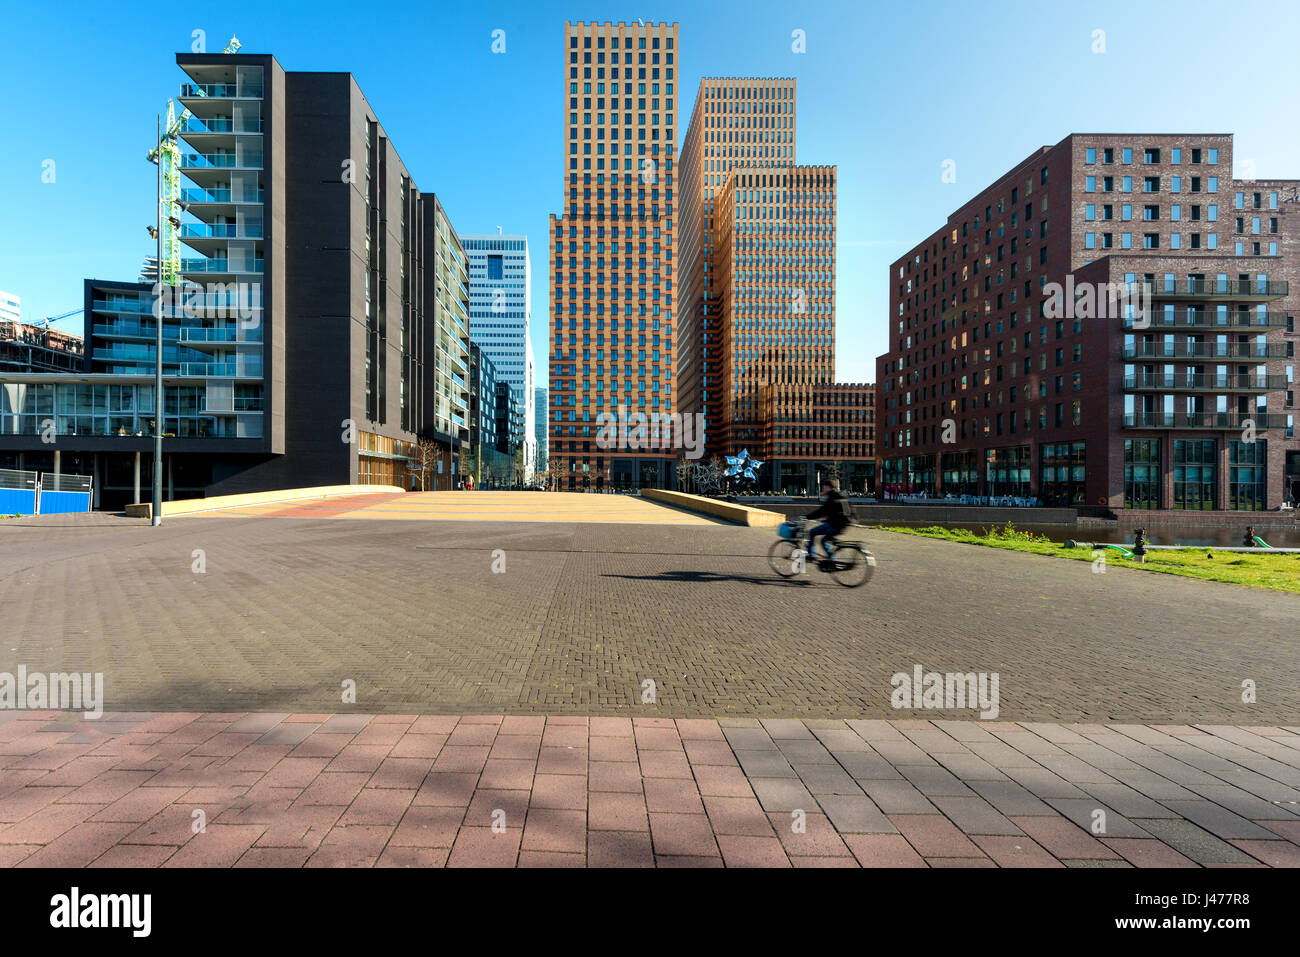 Wolkenkratzer von Amsterdam, Niederlande. Bürogebäude in Amsterdam Zuid, Amsterdam, Niederlande. Menschen, die Radfahren in Amsterdam, Niederlande Stockfoto